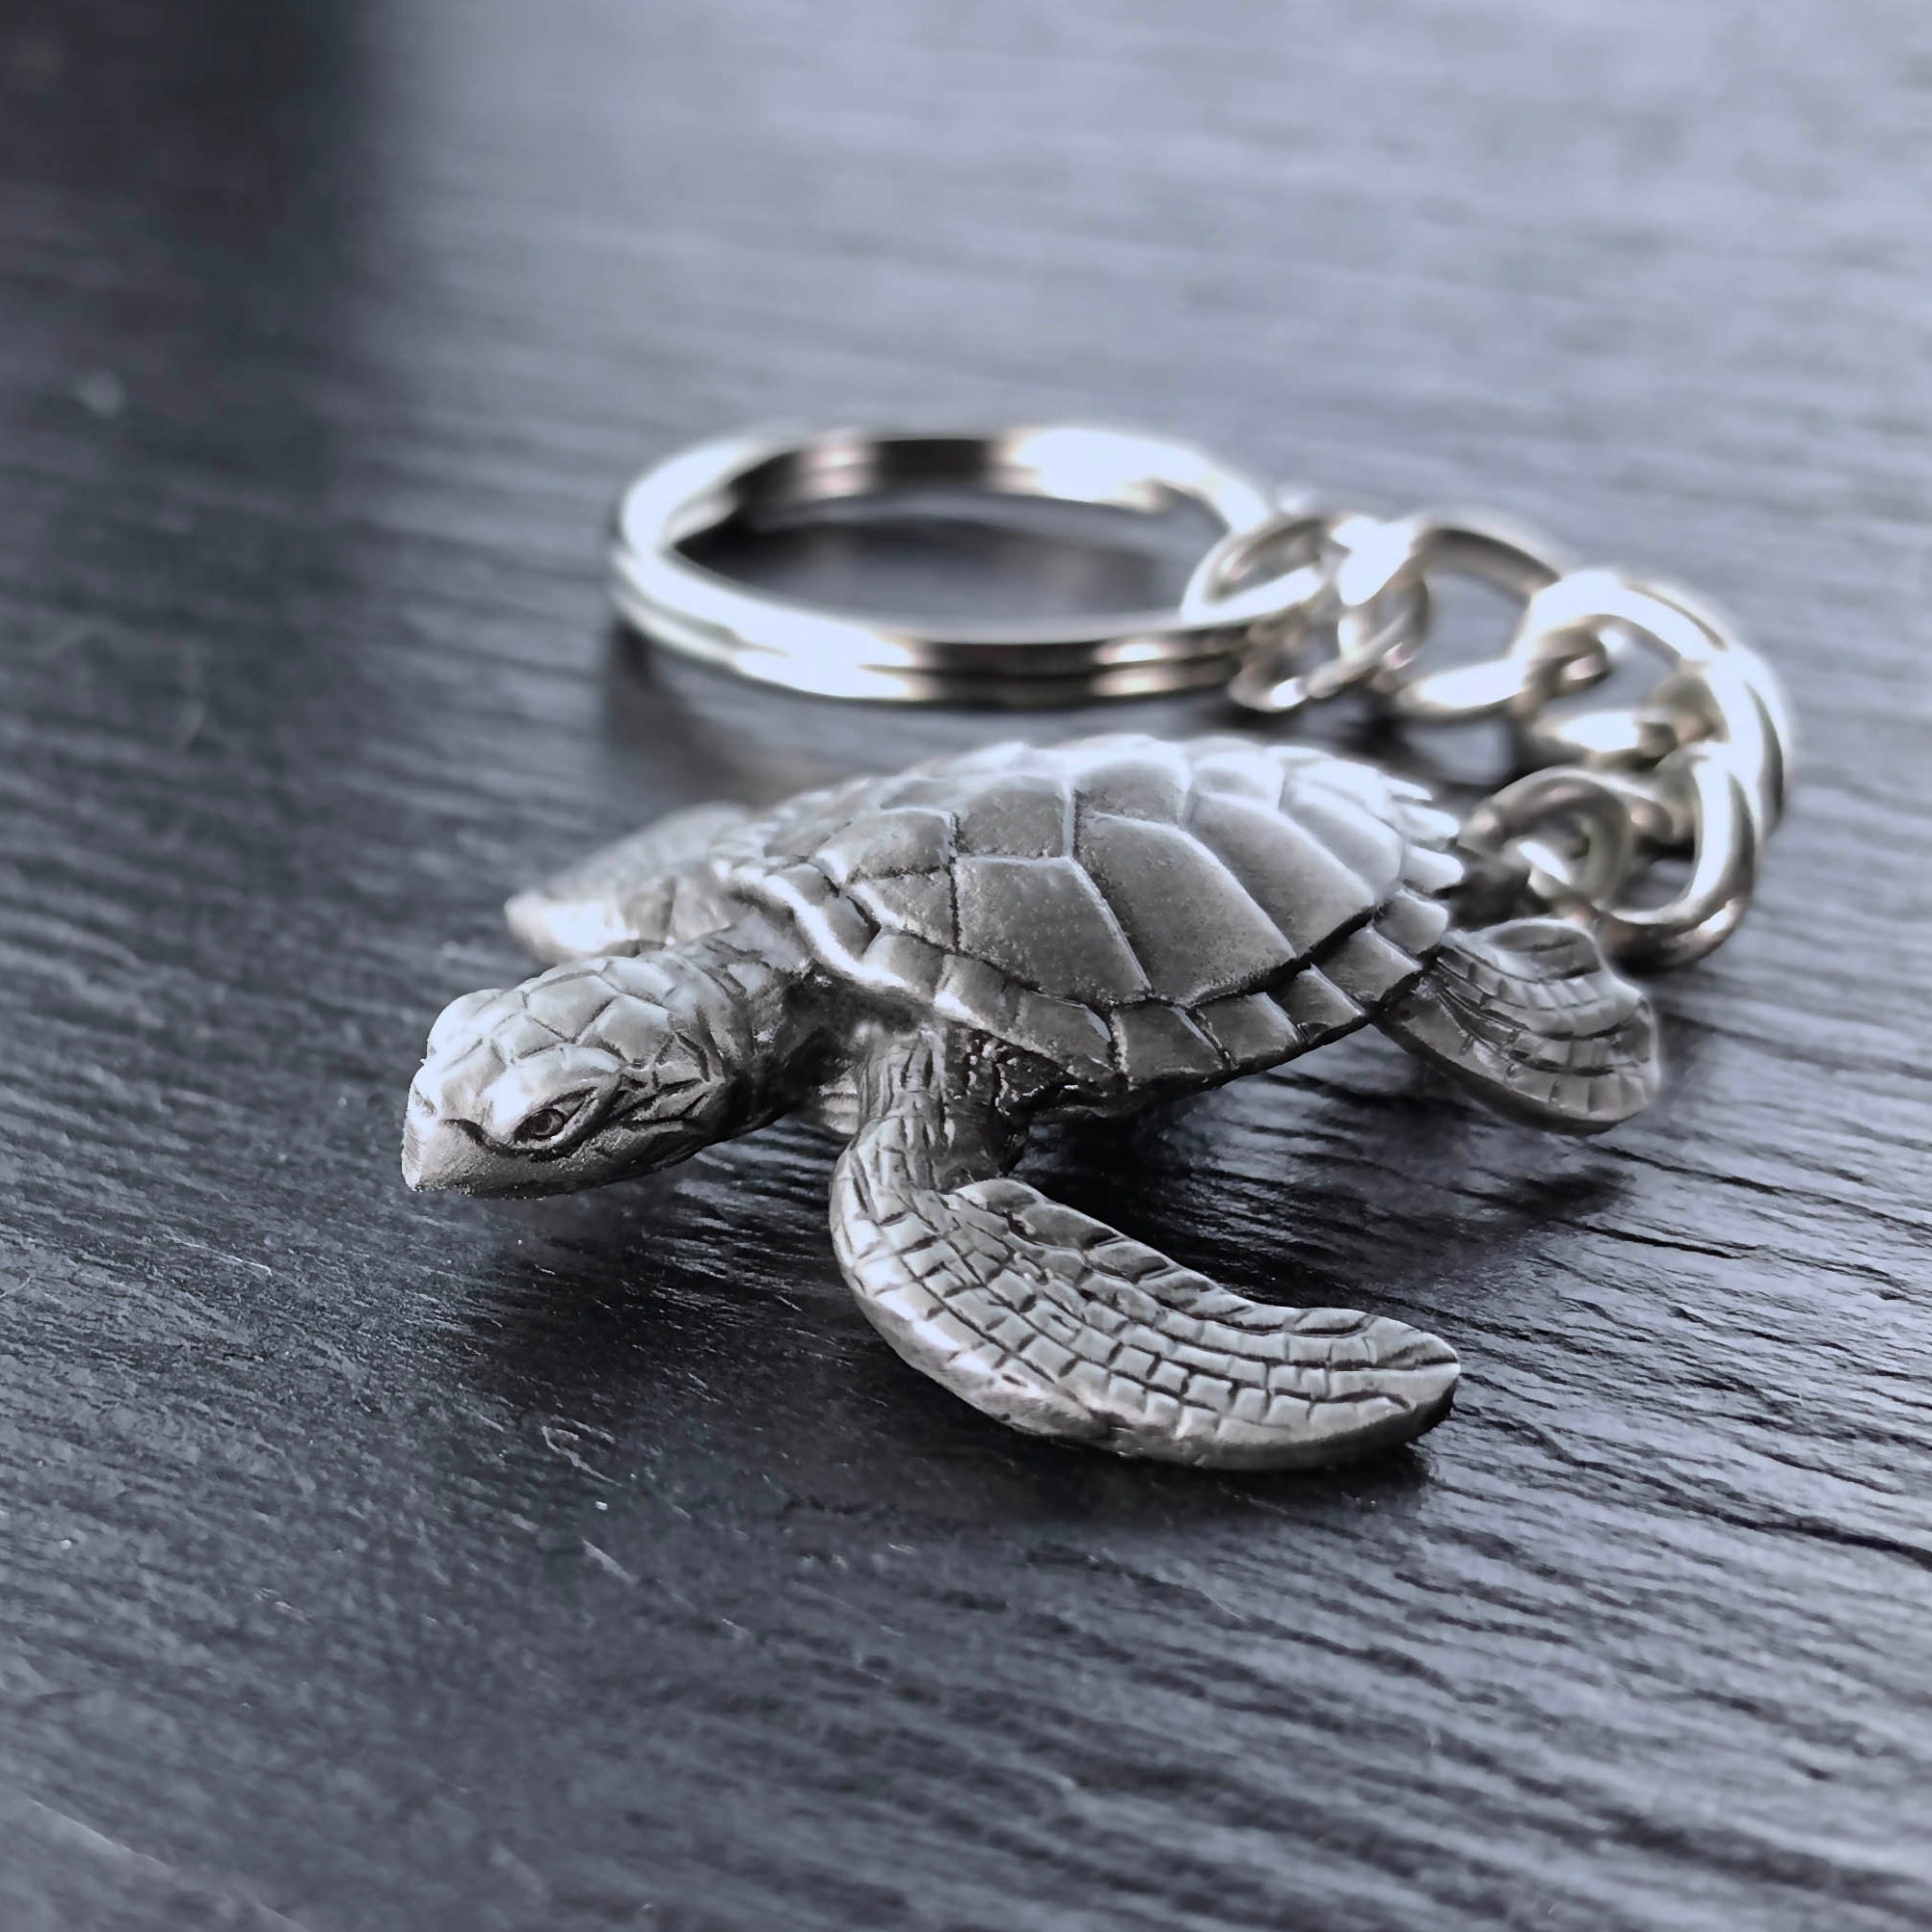 Cloud B Twilight Keychain - Sea Turtle